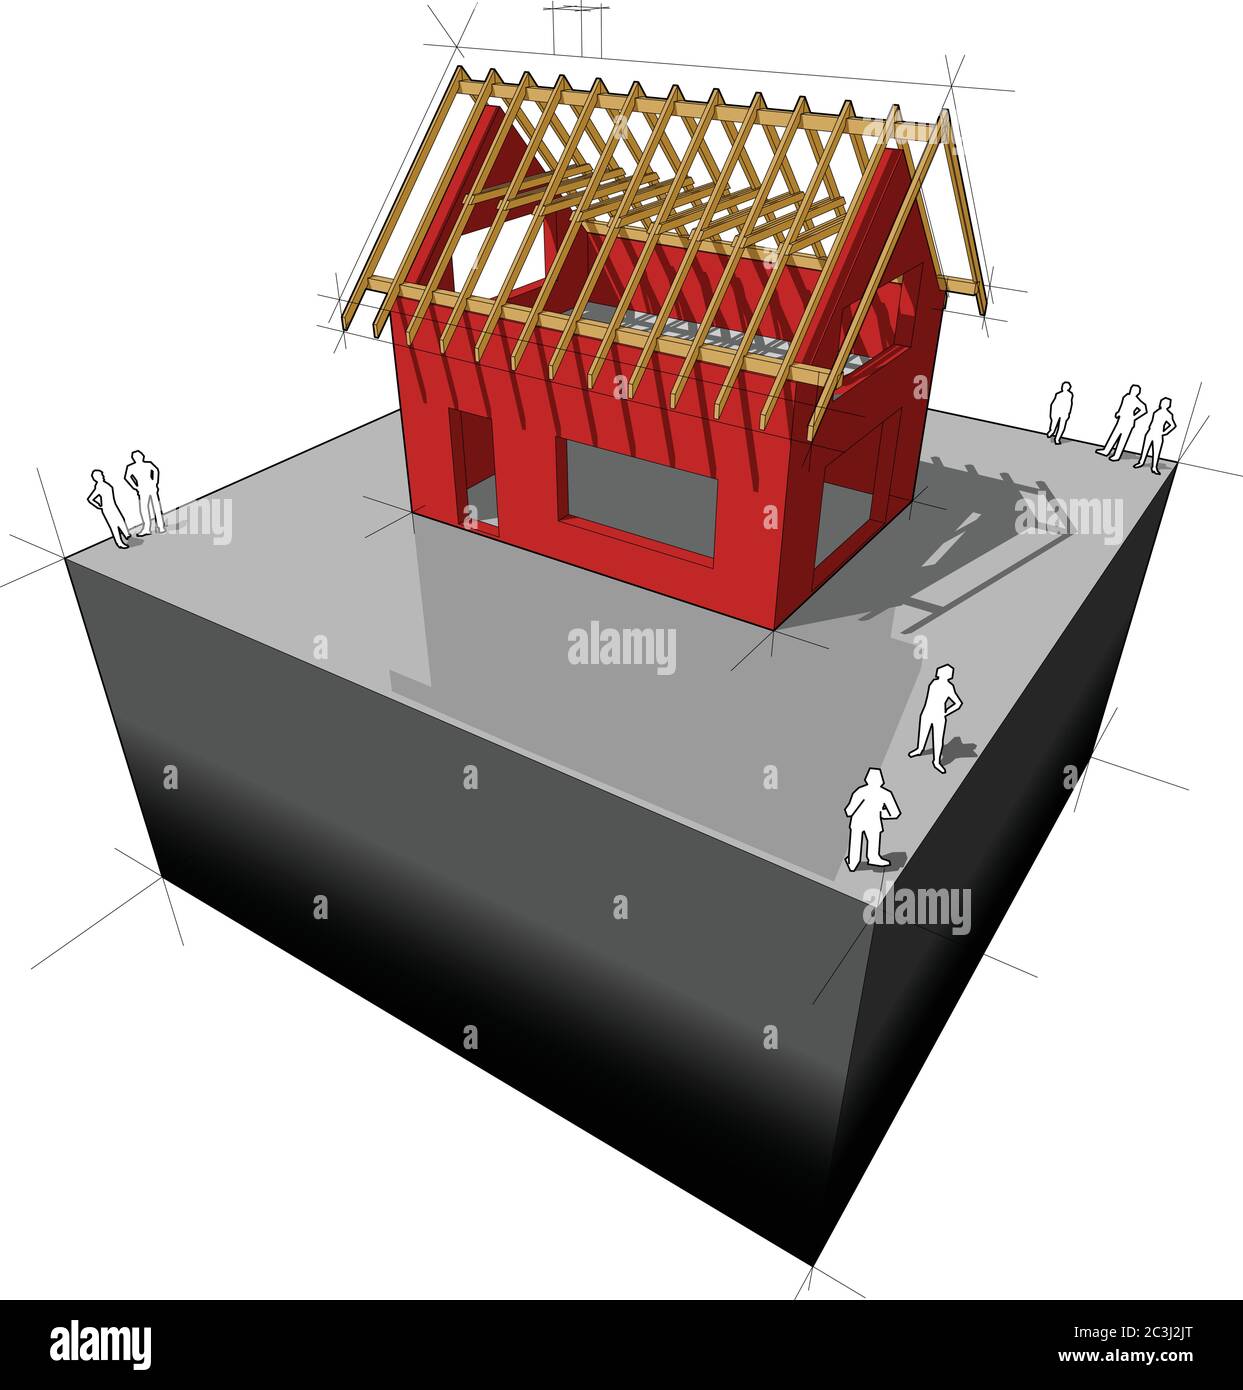 Bau von einfachen Einfamilienhaus mit Holzdach Rahmenkonstruktion Stock Vektor